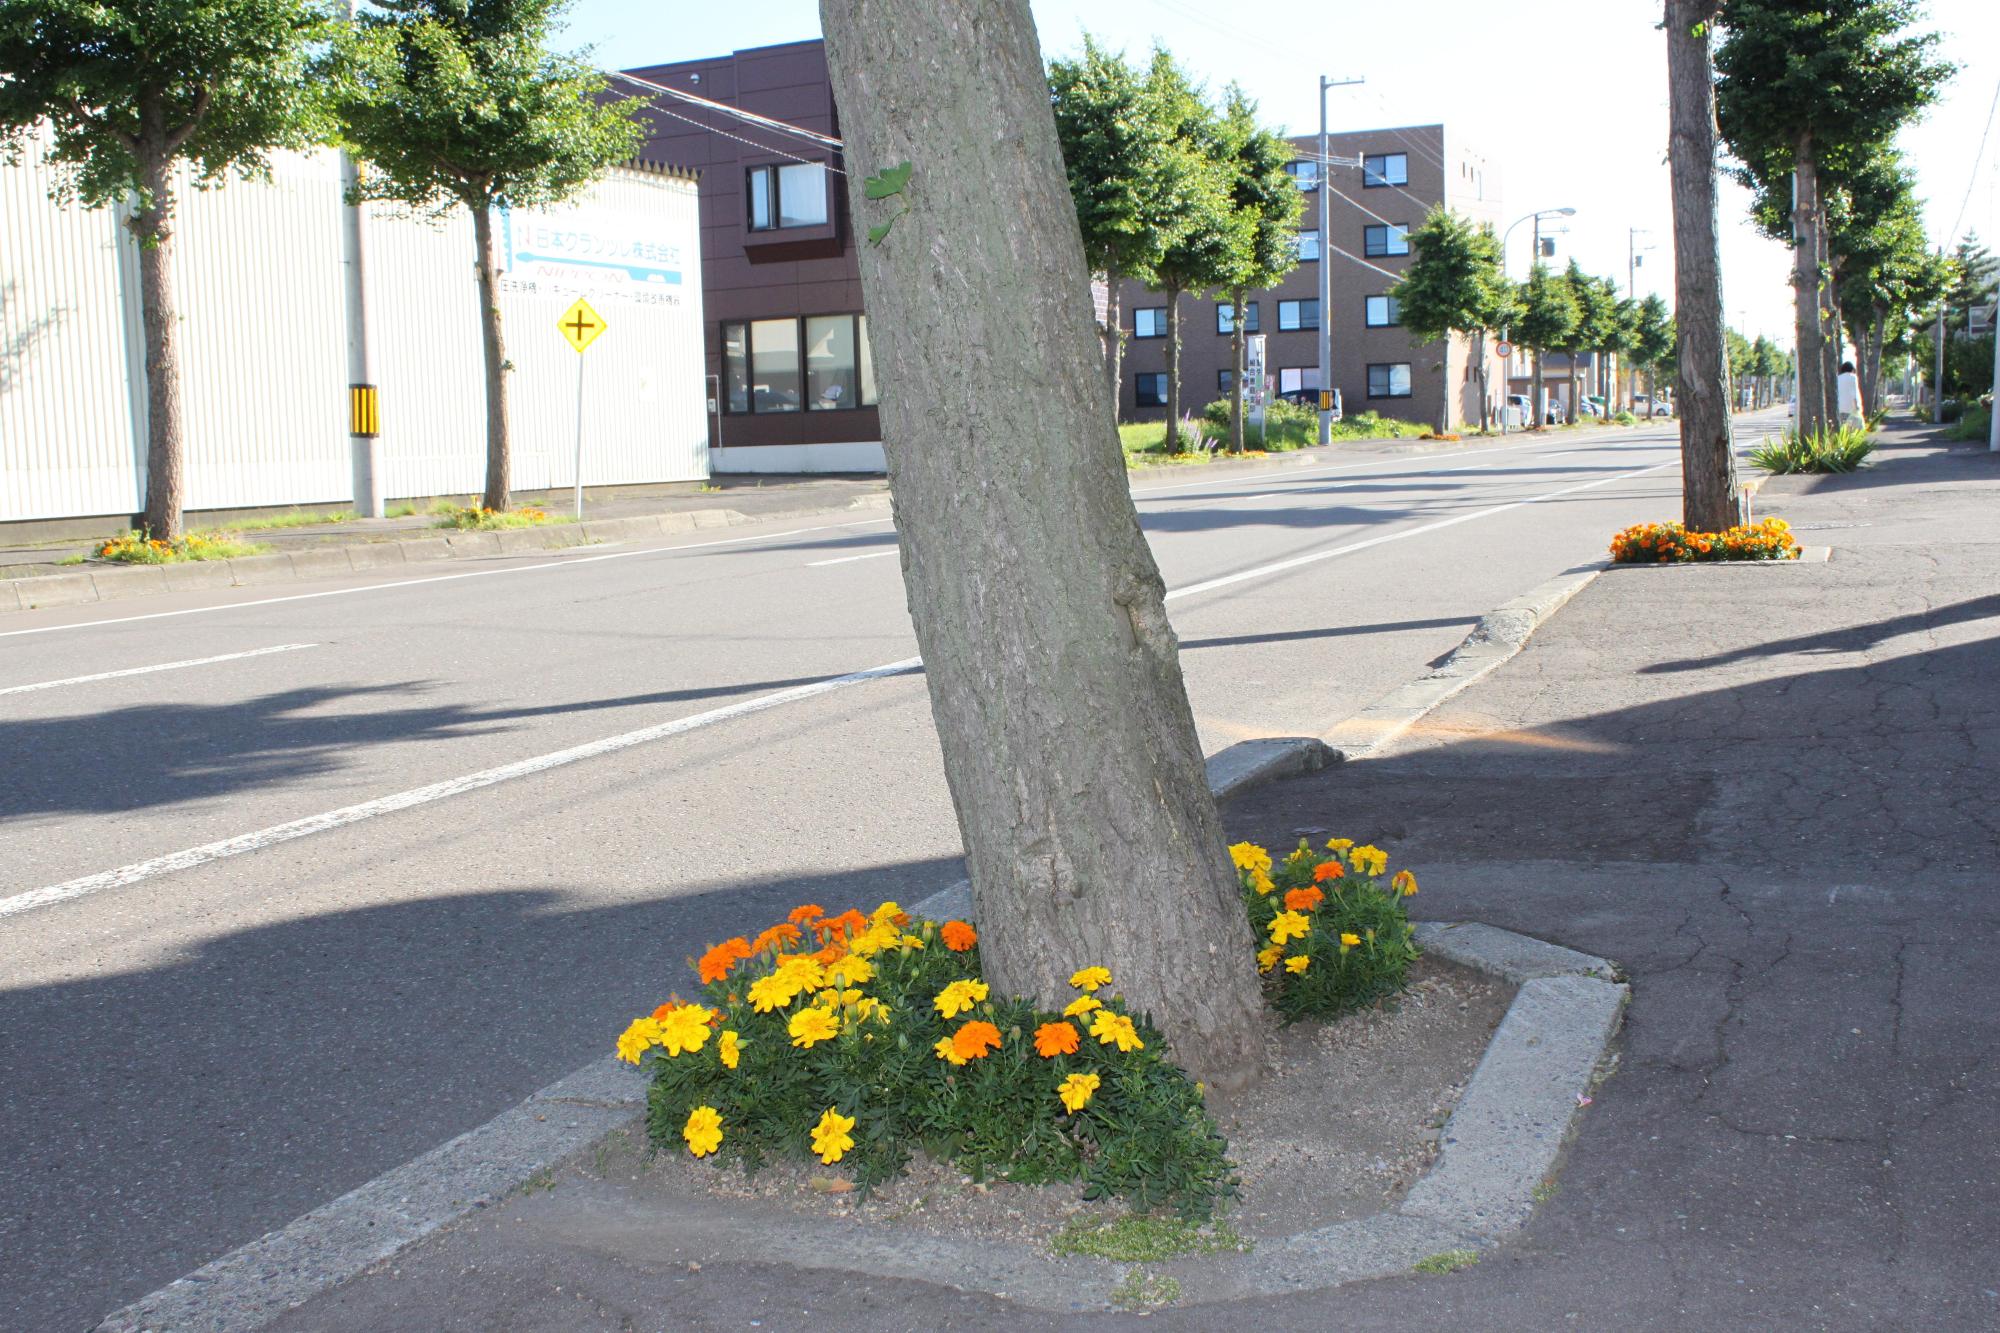 （写真）道路沿いに街路樹が並んでいますが、1本1本の街路樹の周りには黄色と橙色の花が植えられ、彩りを添えています。